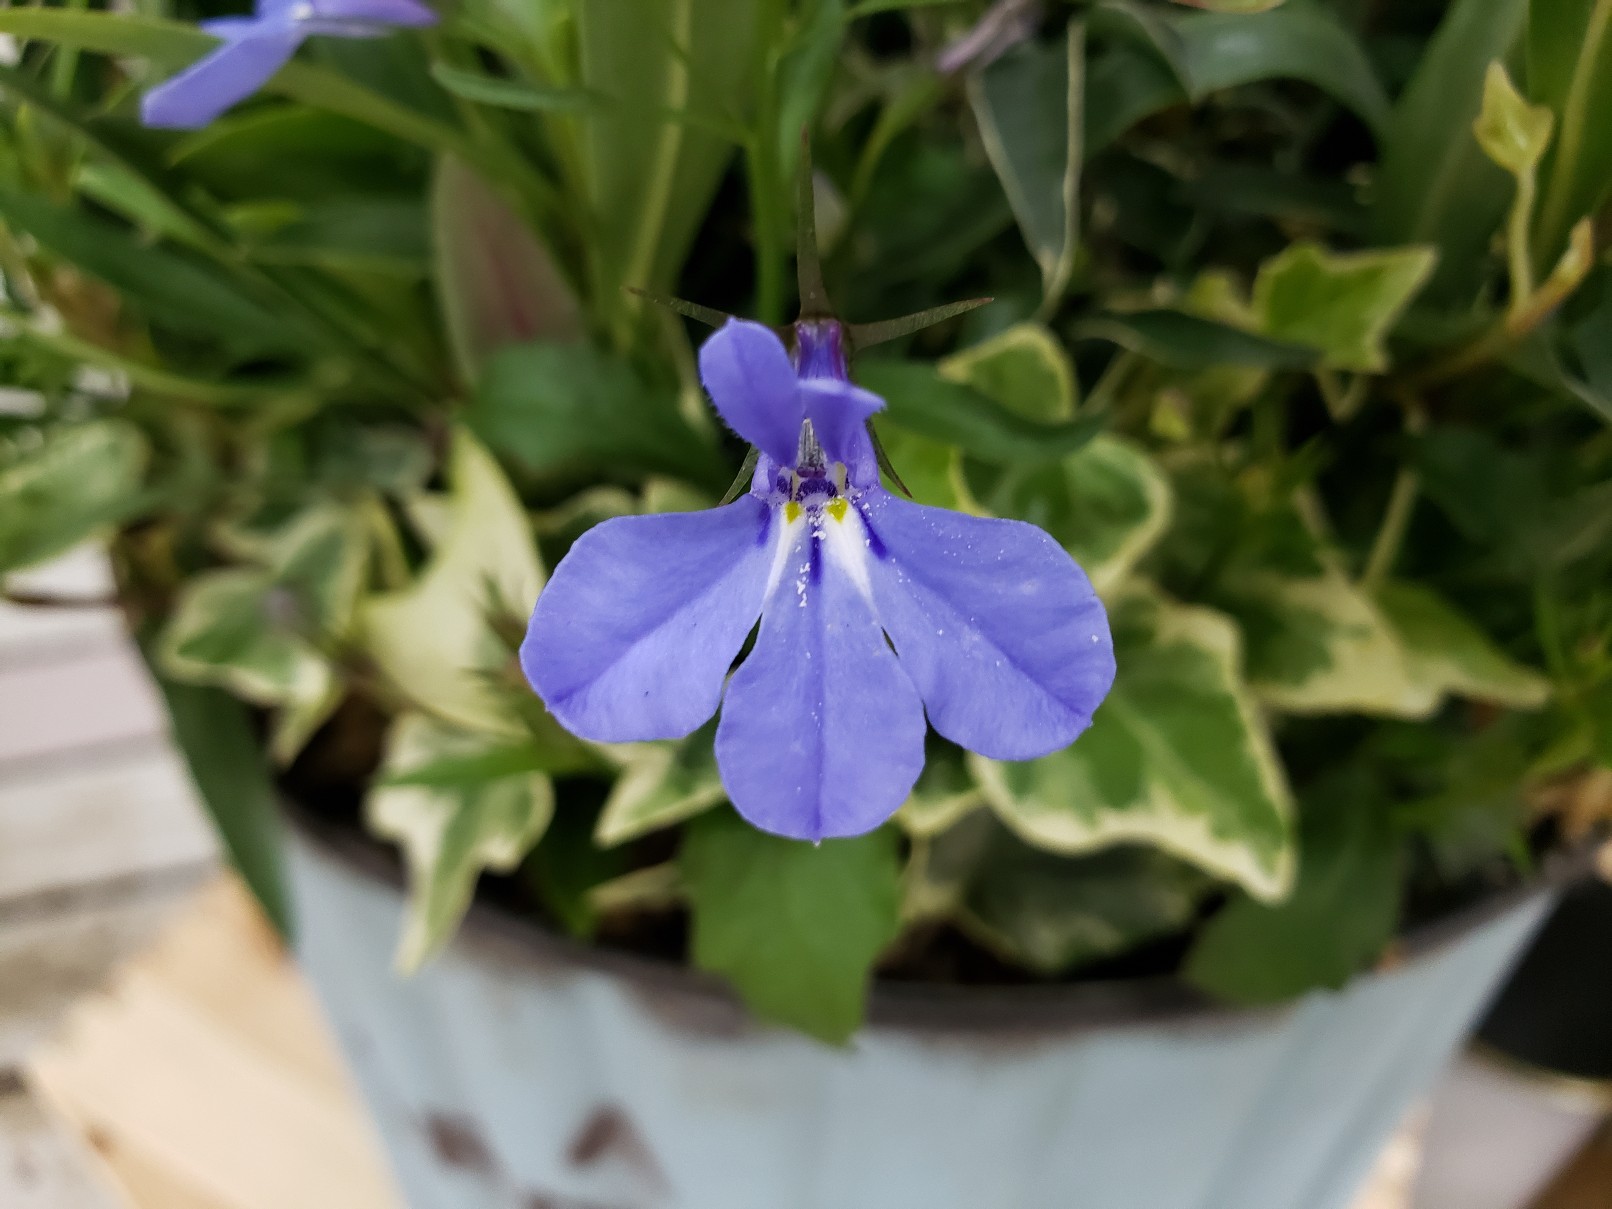 ジョイフル本田 ガーデンセンター ガーデンセンター守谷店 本日の寄せ植え ペンステモン エレクトリックブルー をメインにリーフと小花を添えて 爽やかな色合いのお花やリーフを組み合わせました 少し暑い日が続いたので涼しげな雰囲気が素敵です